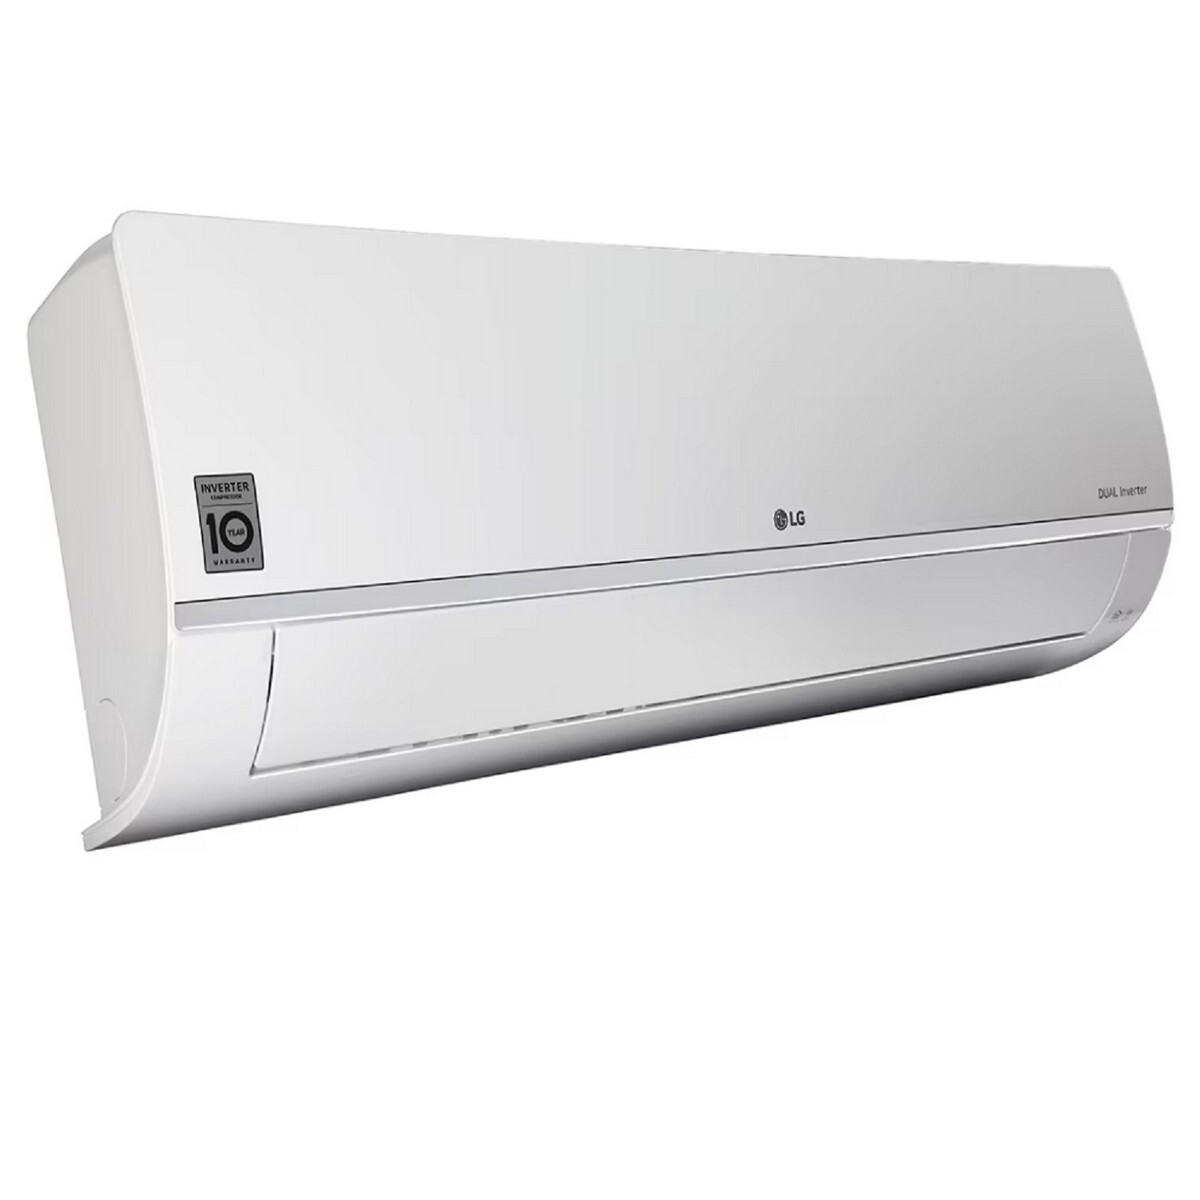 LG Inverter Air Conditioner RS-Q14SWZE 1Ton 5*